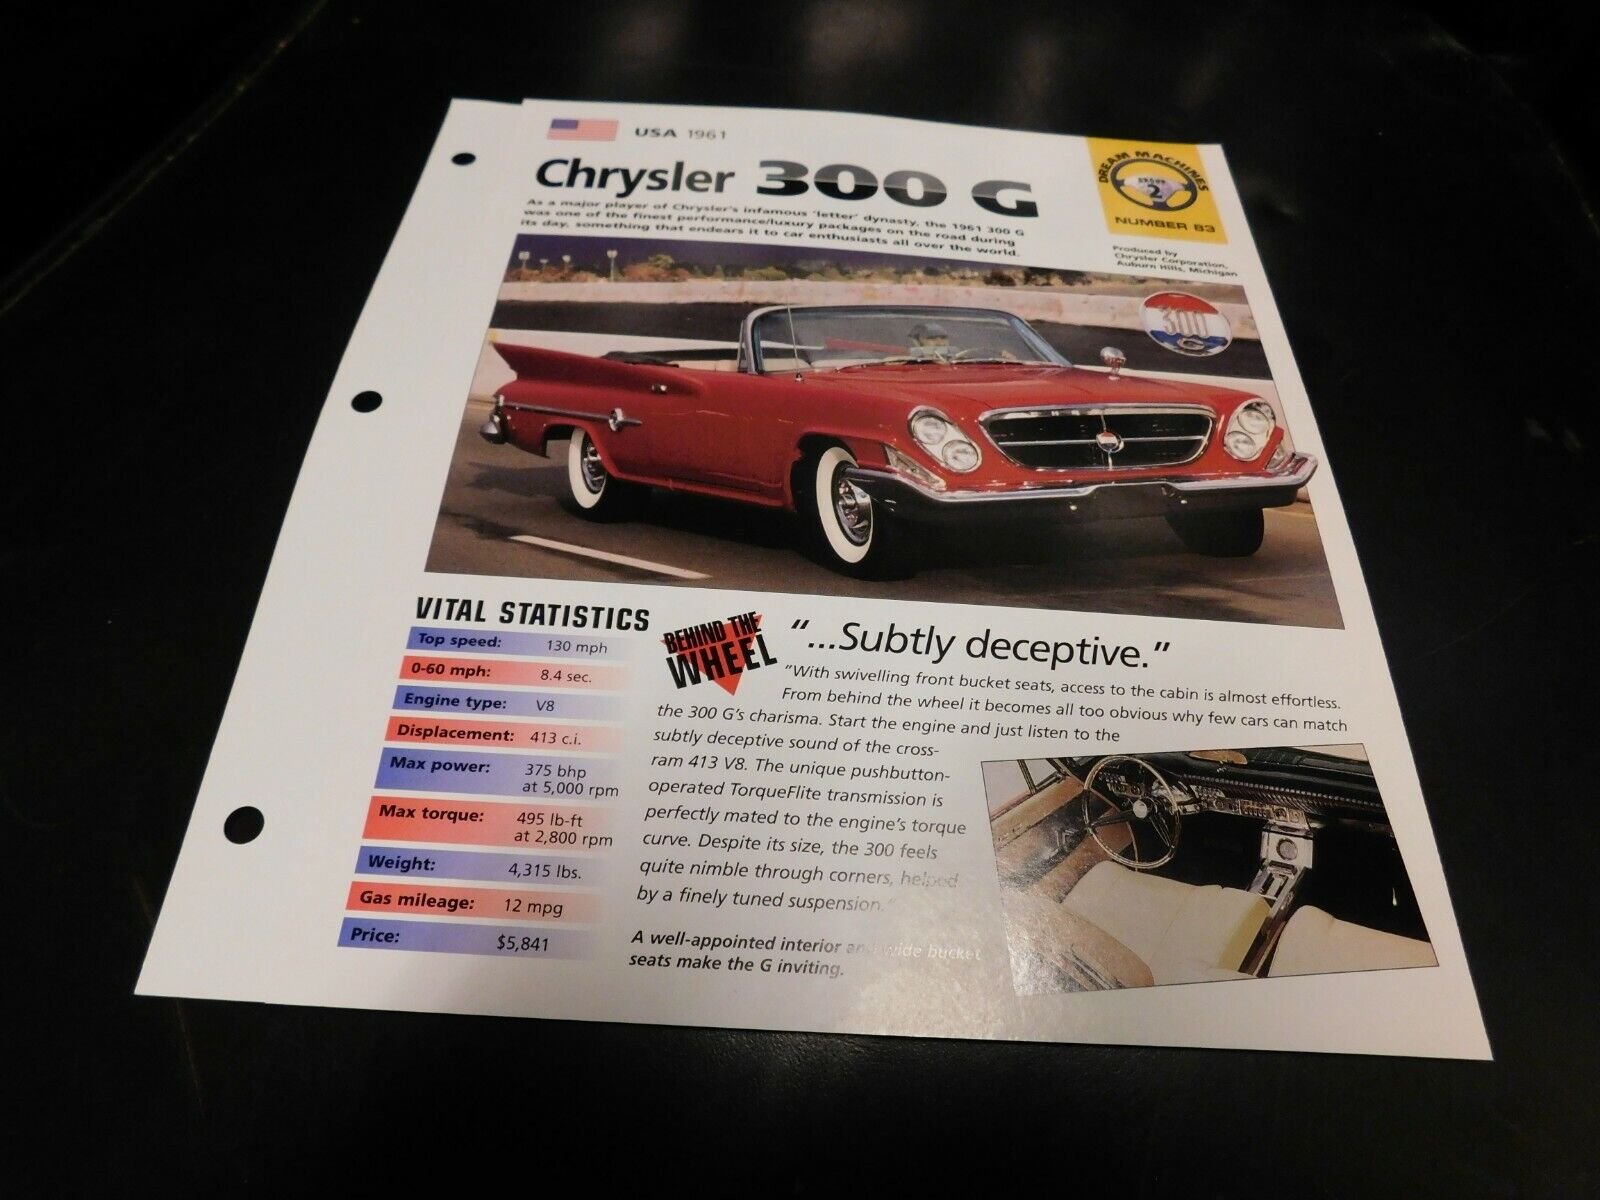 Chrysler 300G Wallpapers